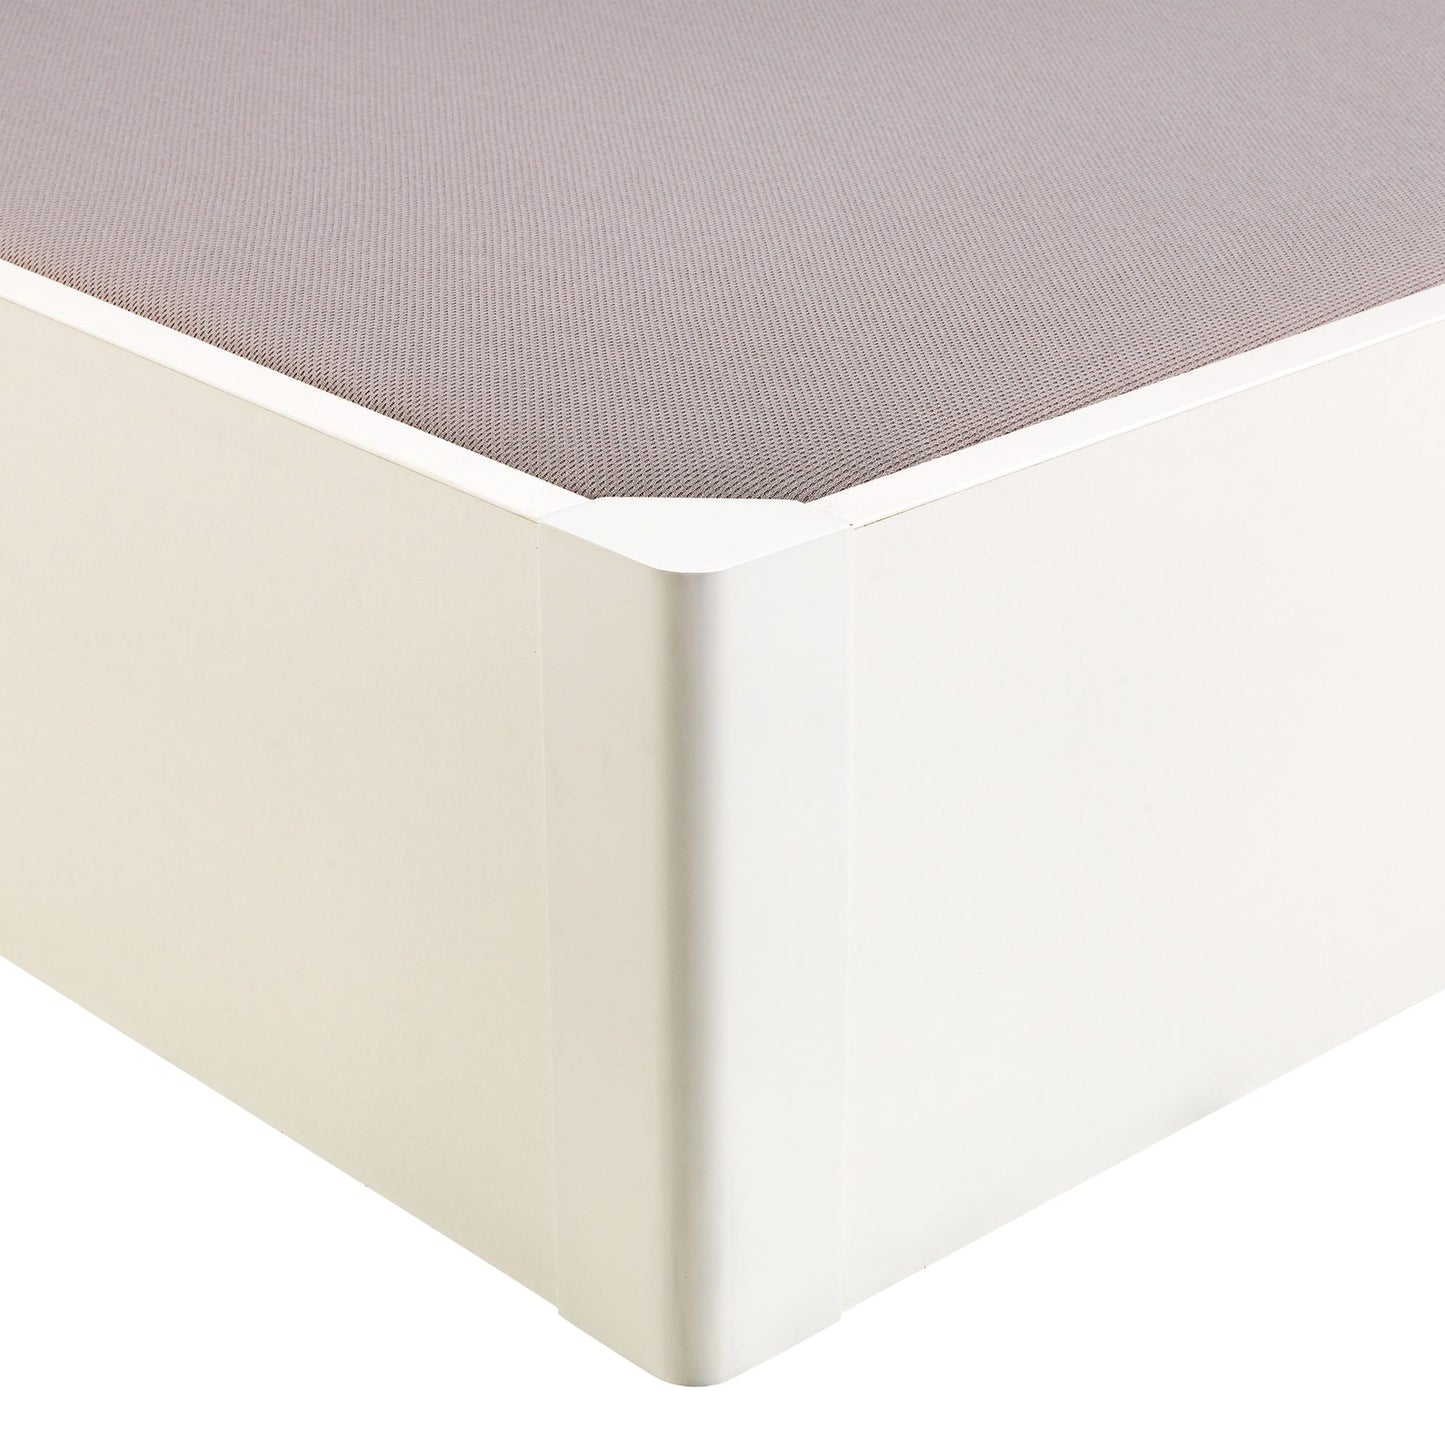 Canapé abatible de madera tapa única de color blanco - DESIGN - 160x200